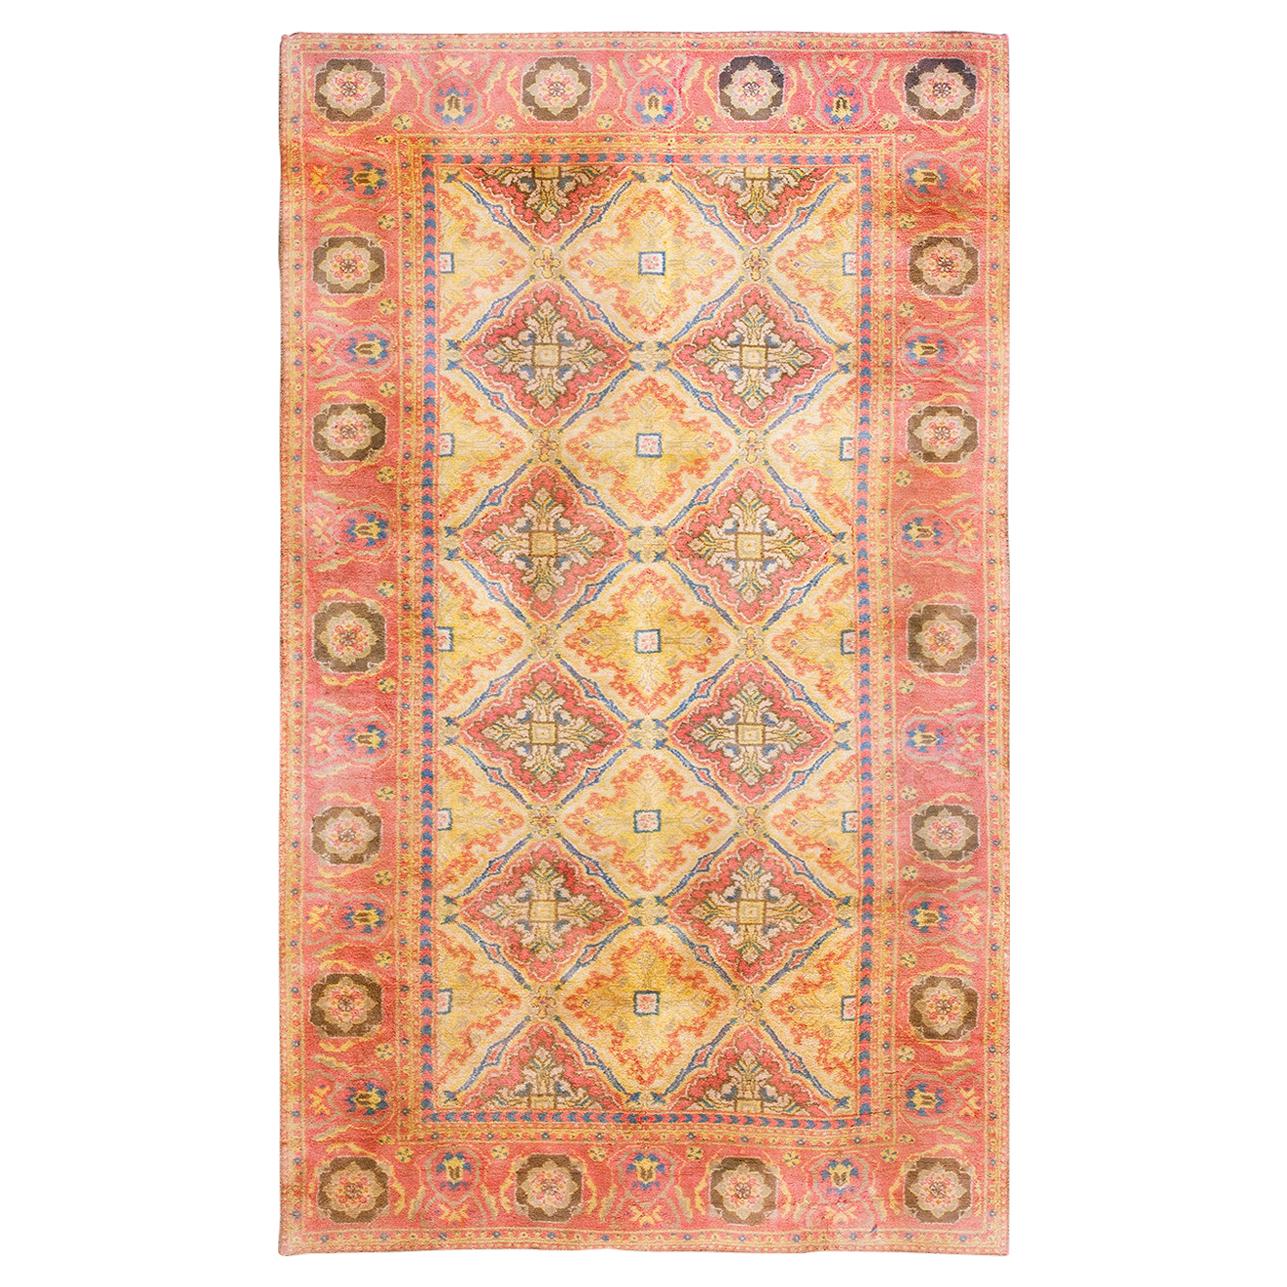 Agra-Teppich aus Baumwolle des frühen 20. Jahrhunderts ( 4' x 7' – 122 x 215 cm)